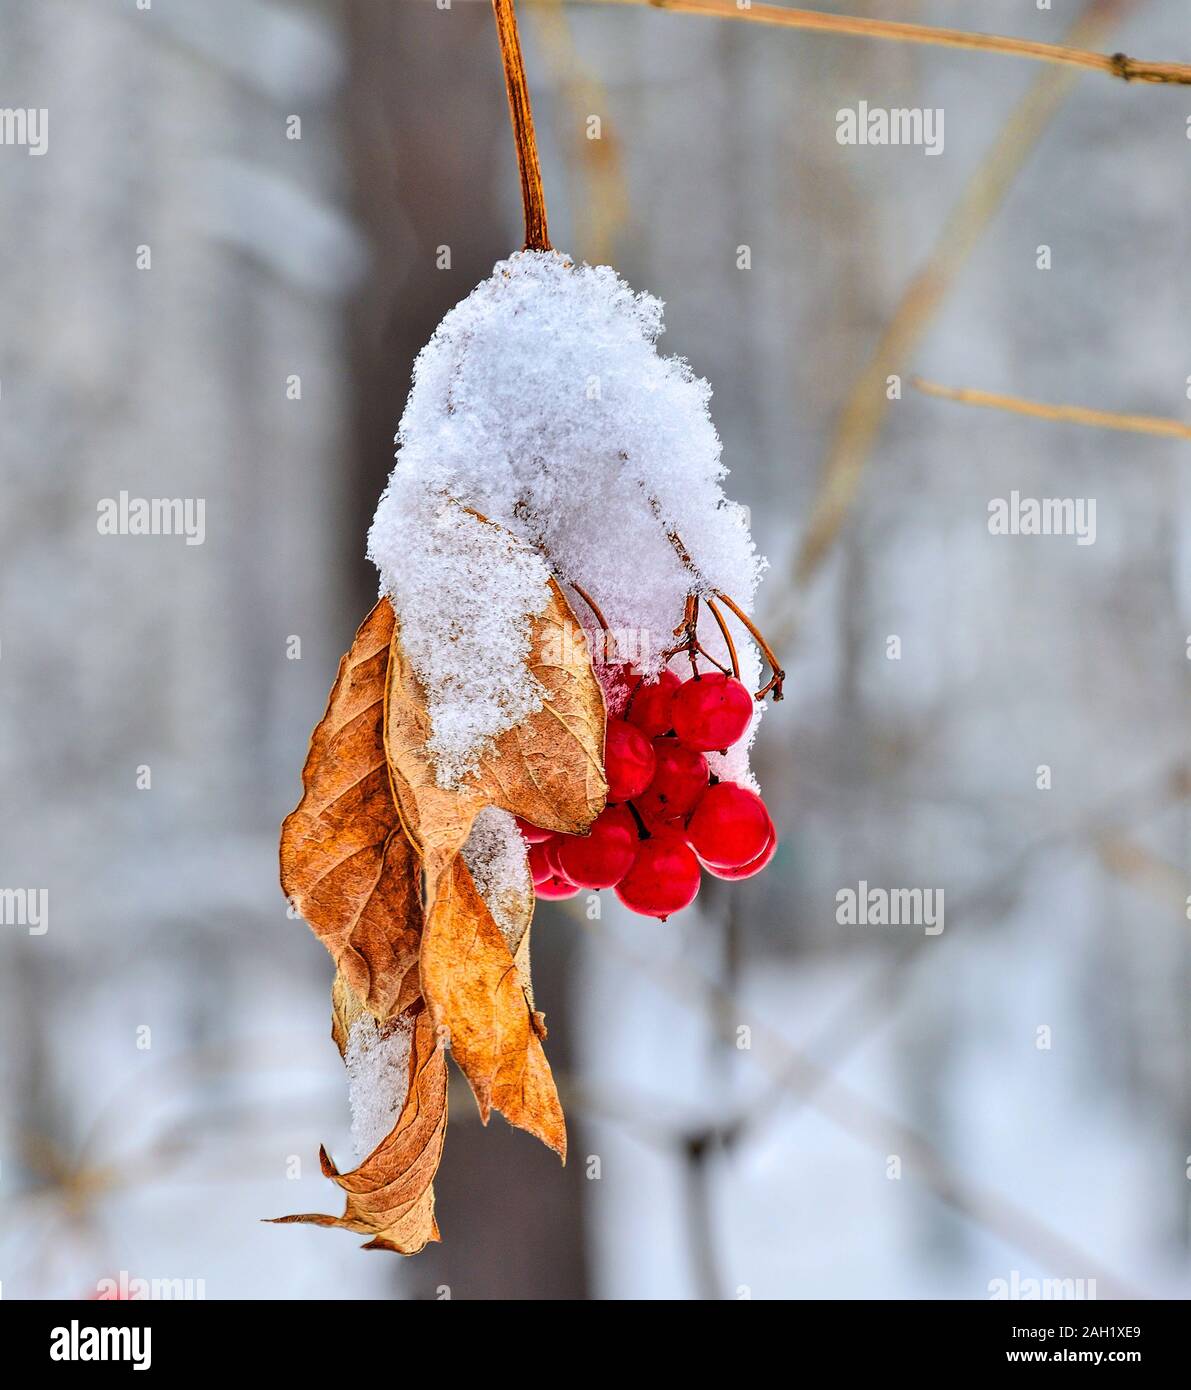 Snowy Zweig mit Cluster der roten viburnum Beeren und trockenen Golden Leaf Nahaufnahme, so hell Weihnachten Dekoration in Weiß gefroren Winter Forest. Stockfoto